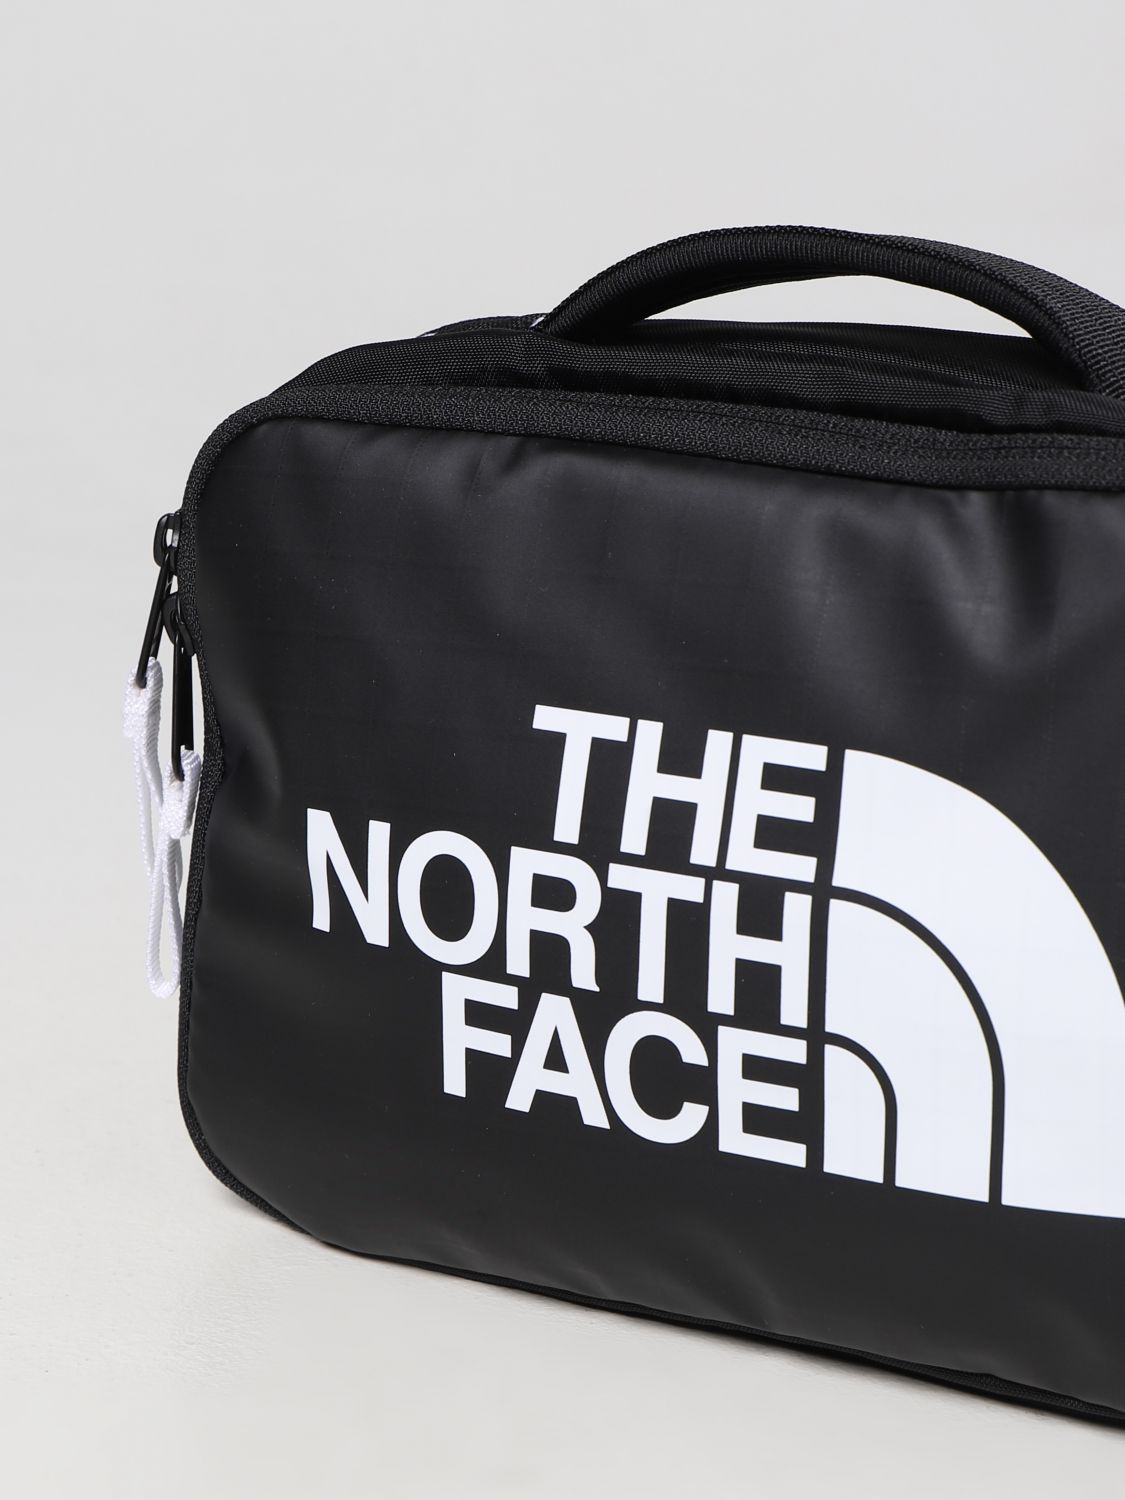 Kosmetikkoffer The North Face: The North Face Herren Kosmetikkoffer schwarz 3